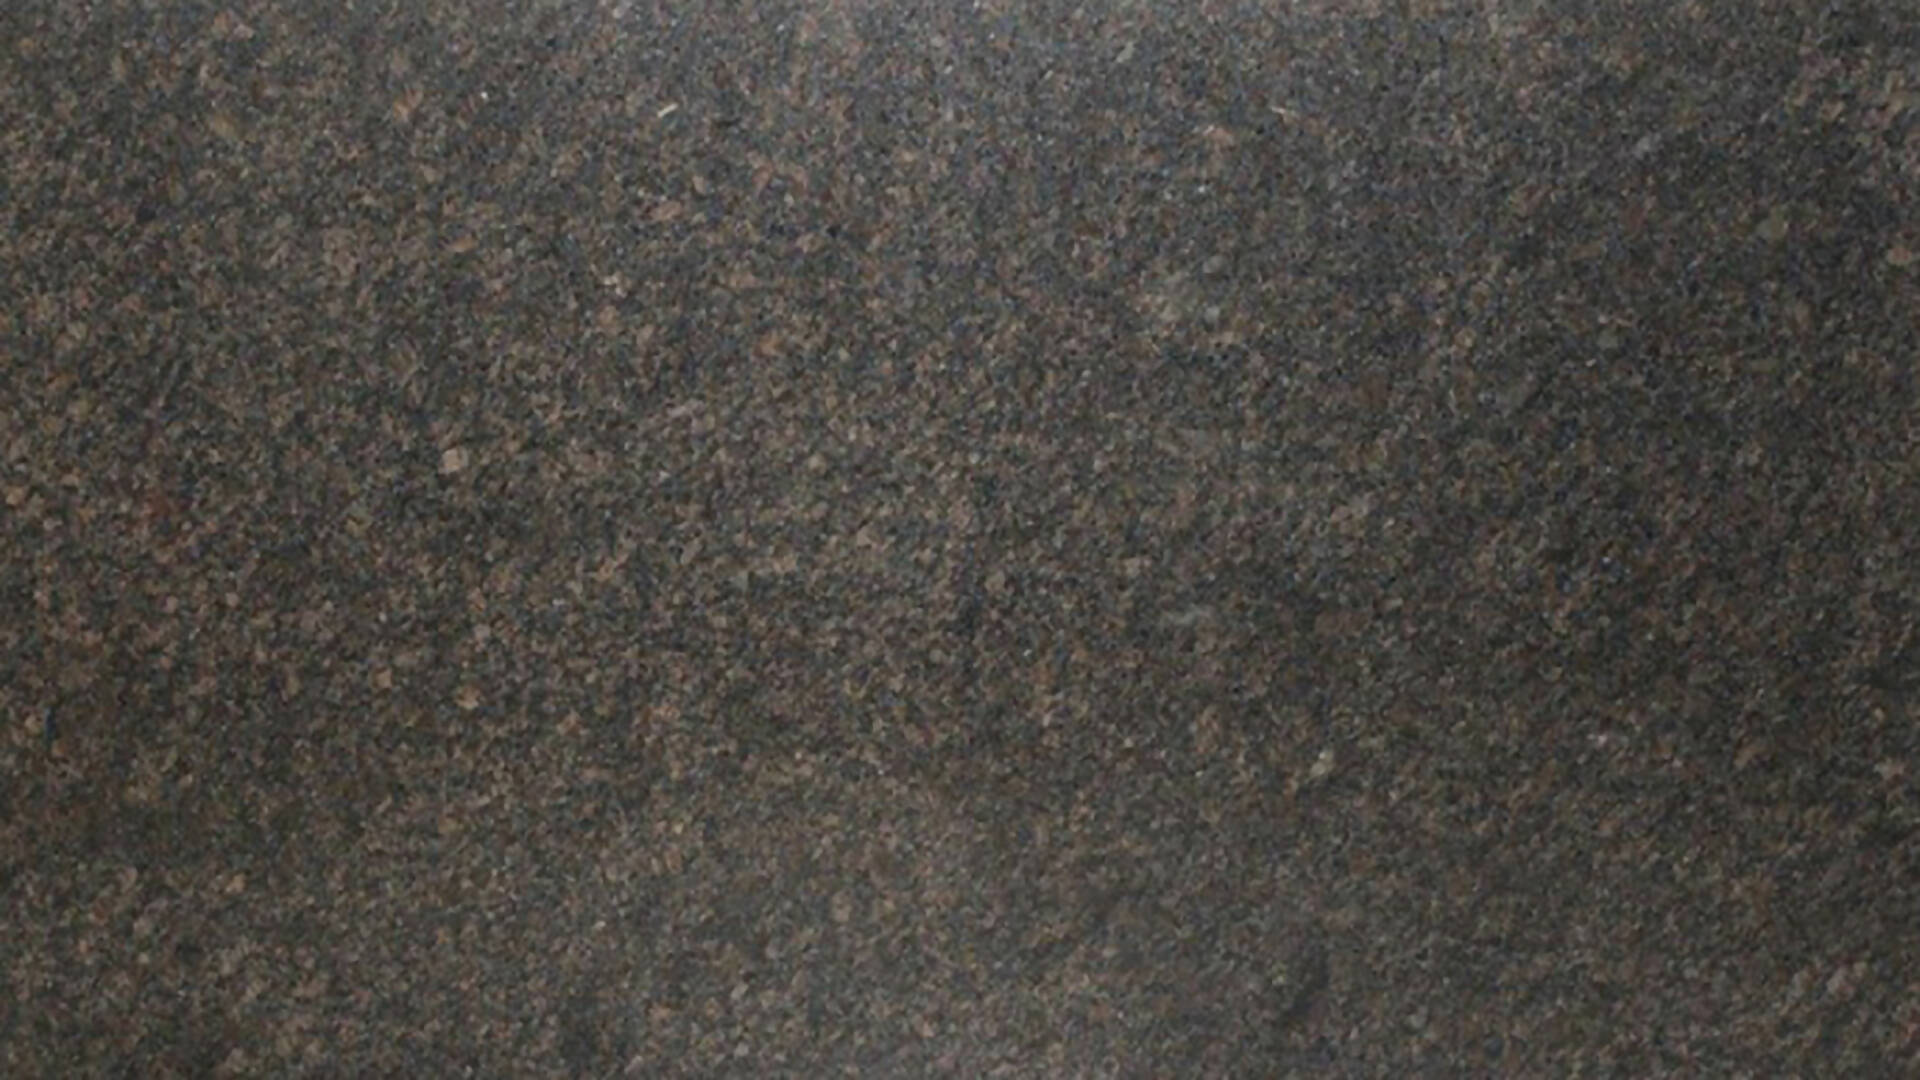 SAPPHIRE BROWN GRANITE,Granite,KSG UK LTD,www.work-tops.com